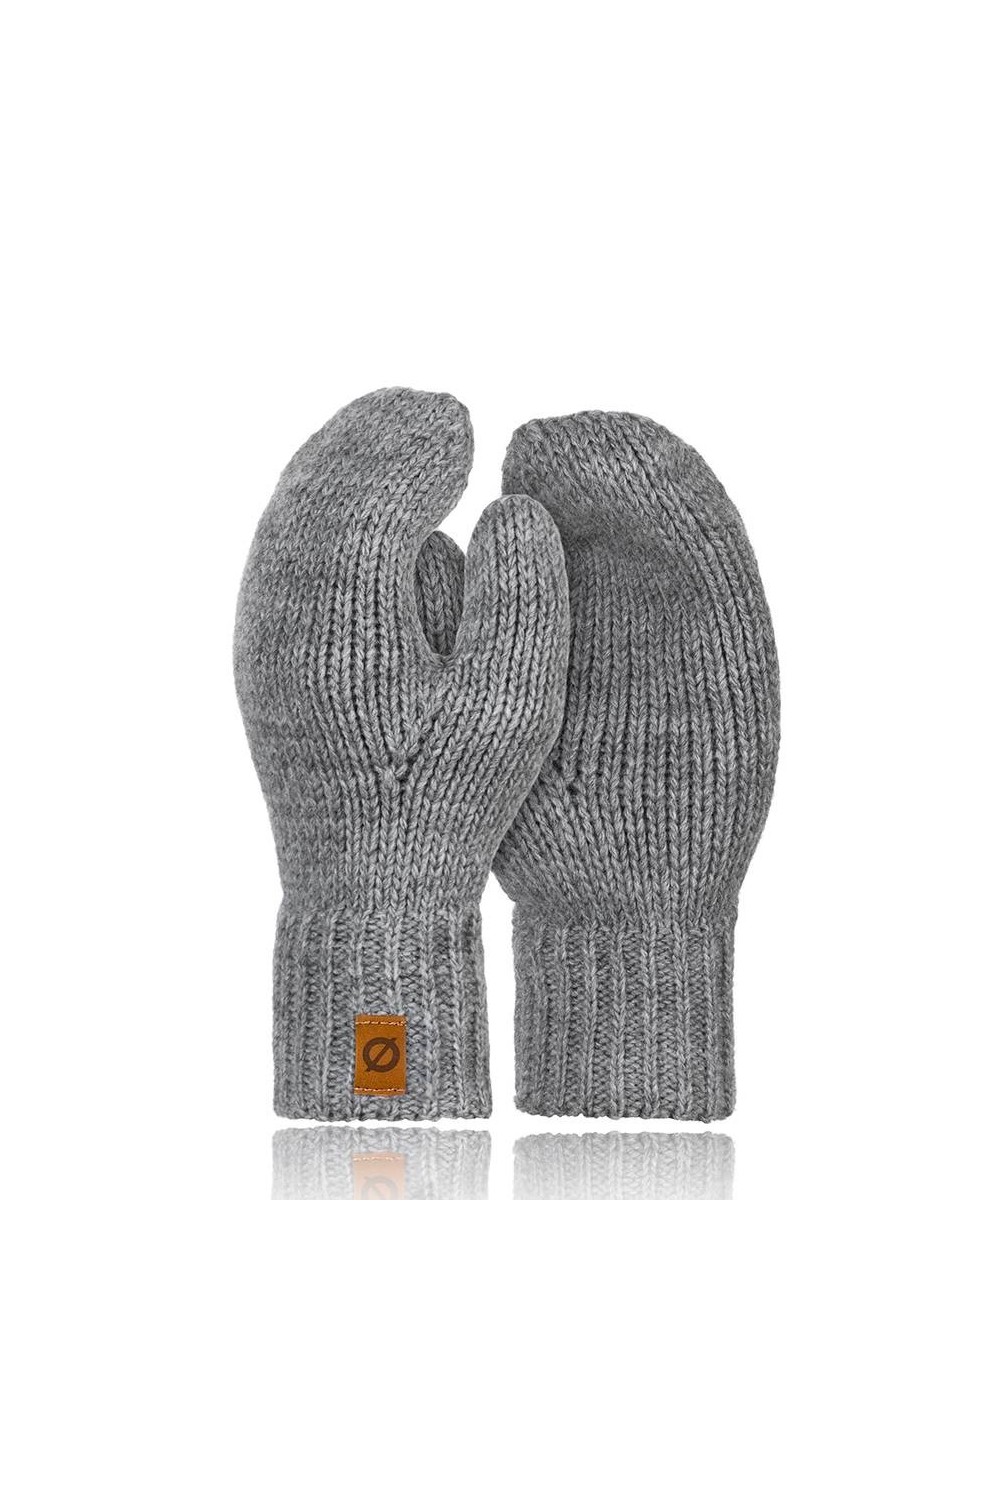 Damskie rękawiczki zimowe jednopalczaste brodrene r02 jasnoszare